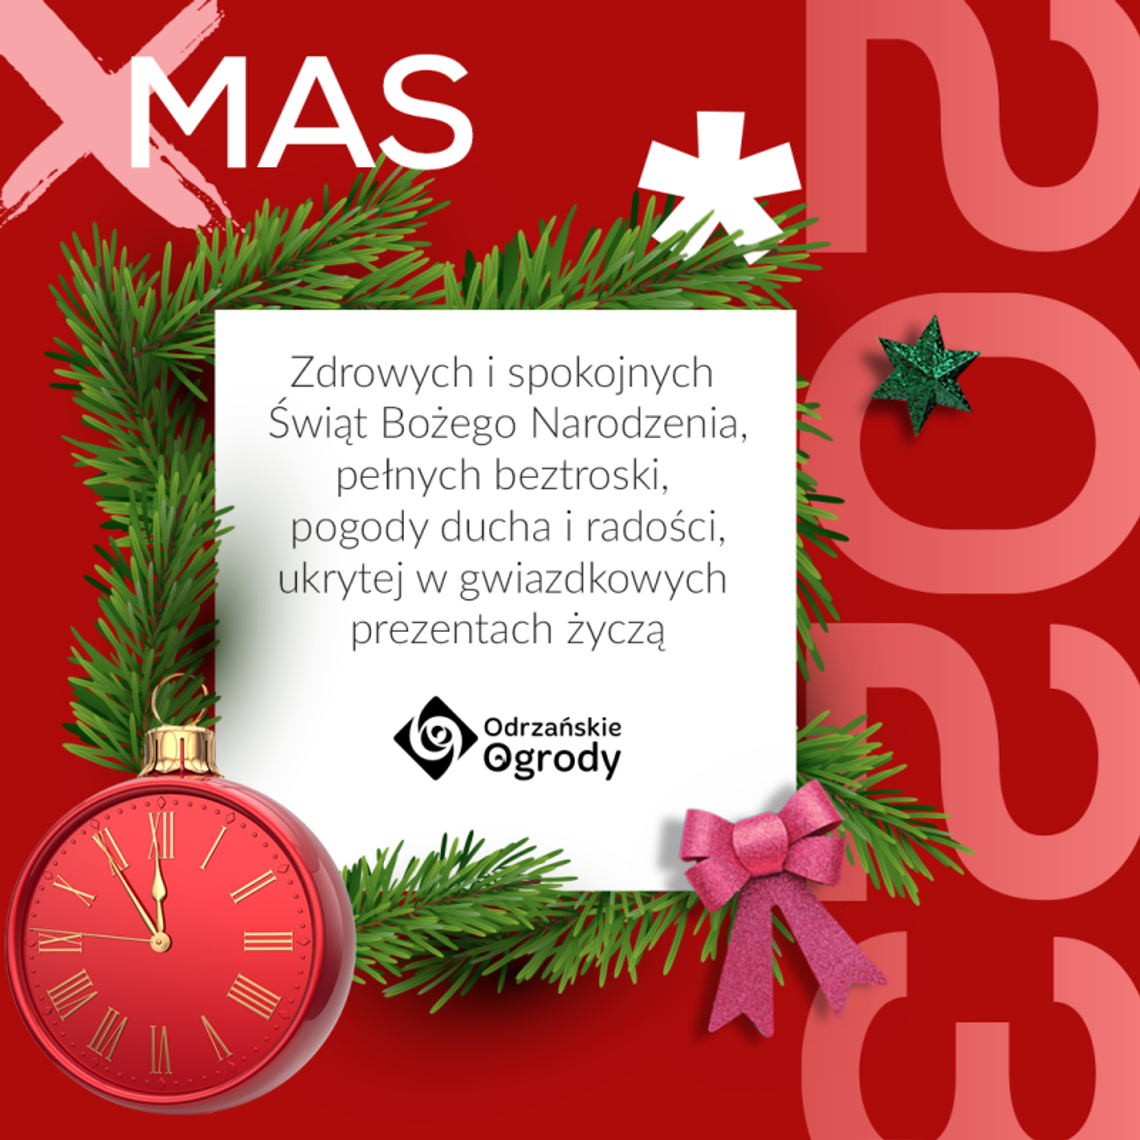 Życzenia bożonarodzeniowe i noworoczne Galerii Odrzańskie Ogrody dla Czytelników KK24.pl